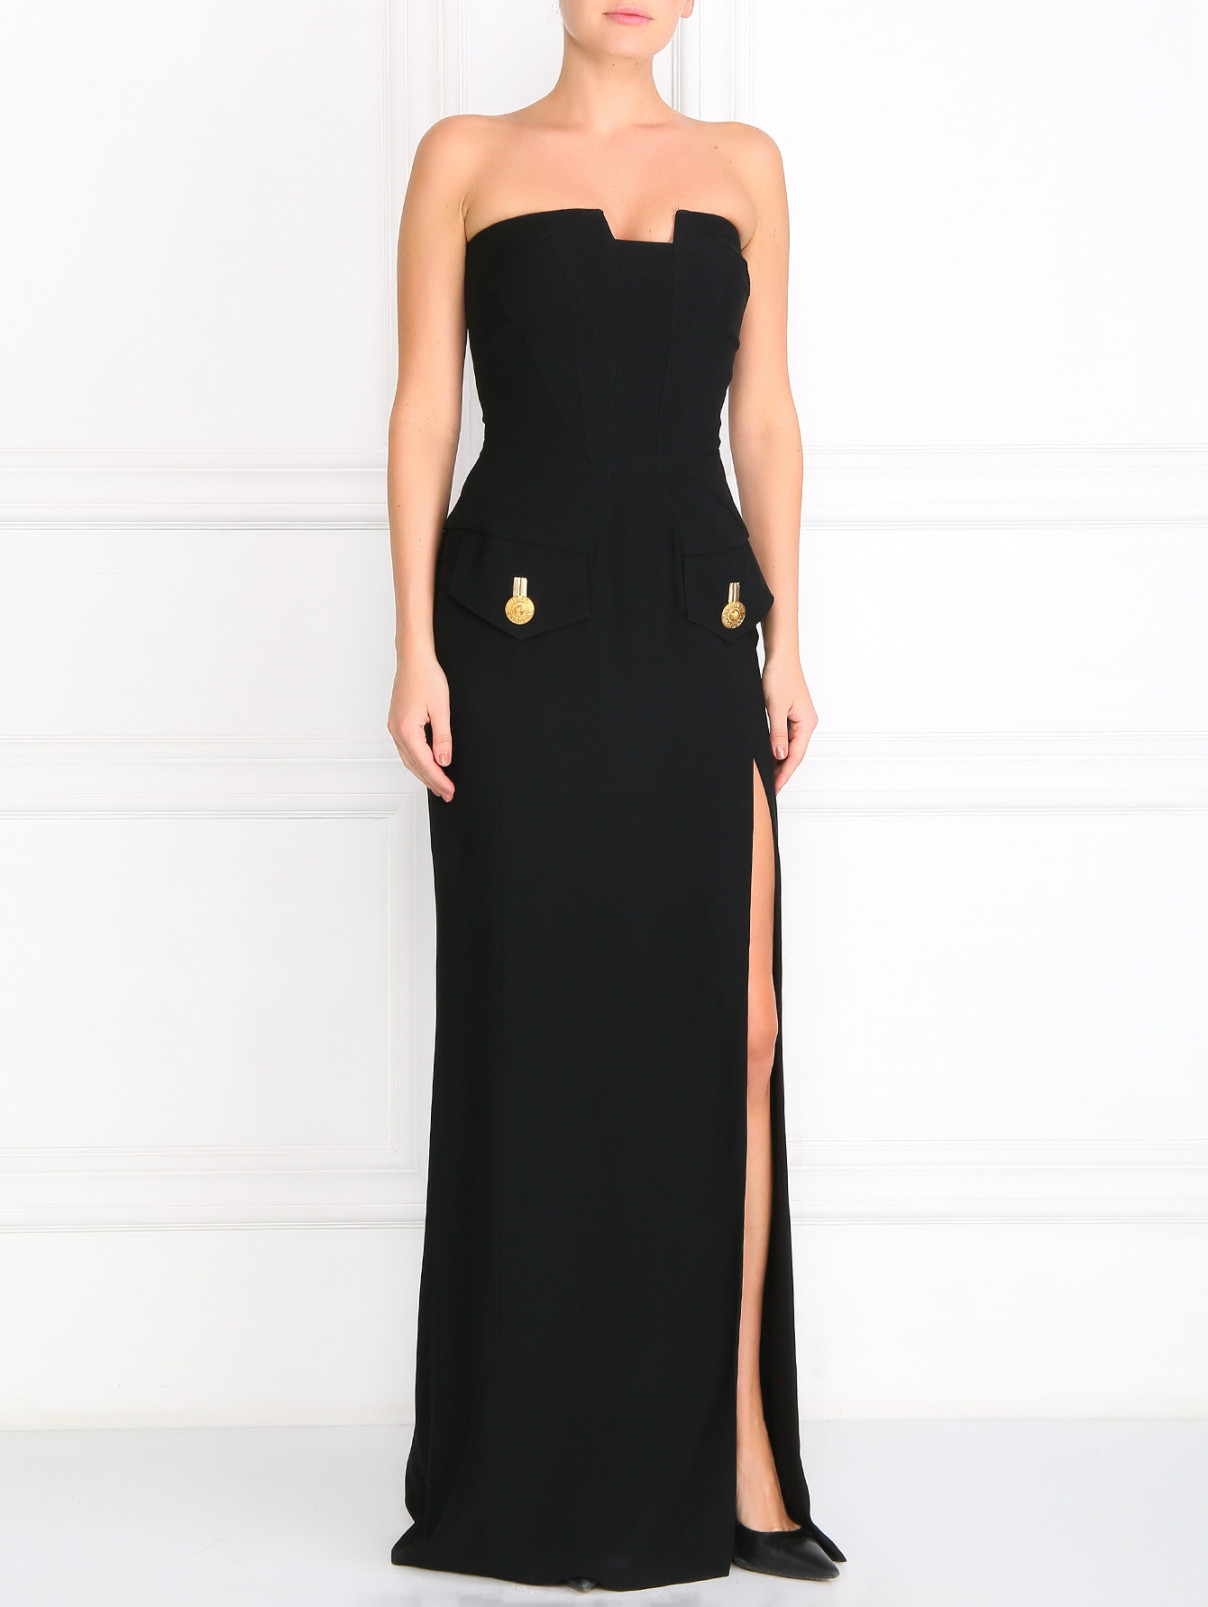 Платье-макси  без бретелей с декоративными пуговицами Versace 1969  –  Модель Общий вид  – Цвет:  Черный